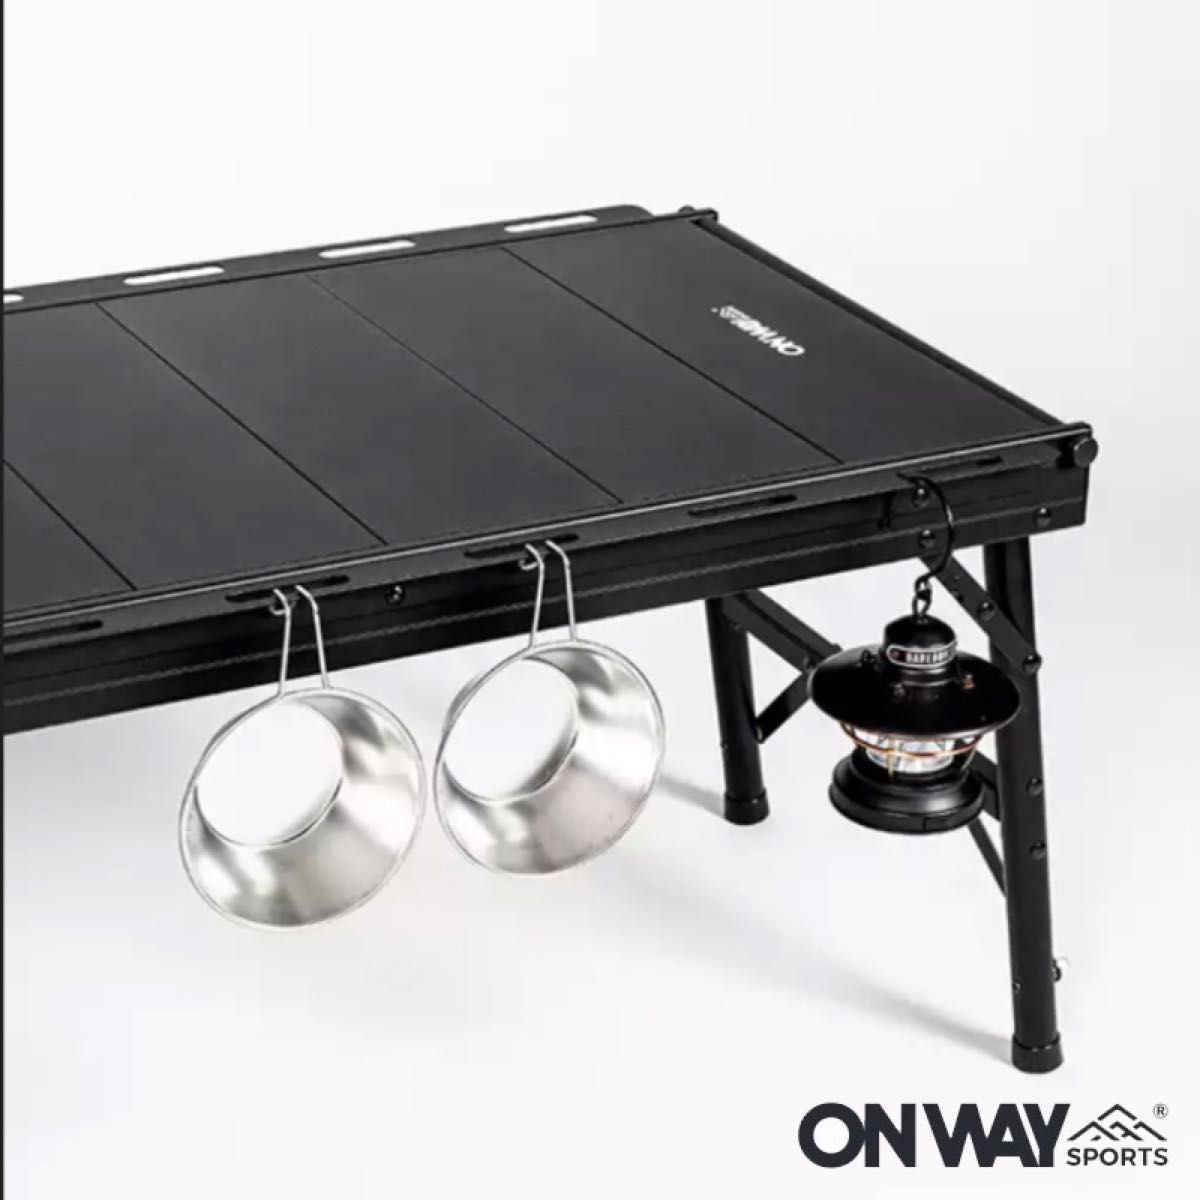 NEW IGTテーブル アルミIGTローテーブル フラットバーナーテーブル 収納ケース付 OW-8044 6ユニットパネルテーブル